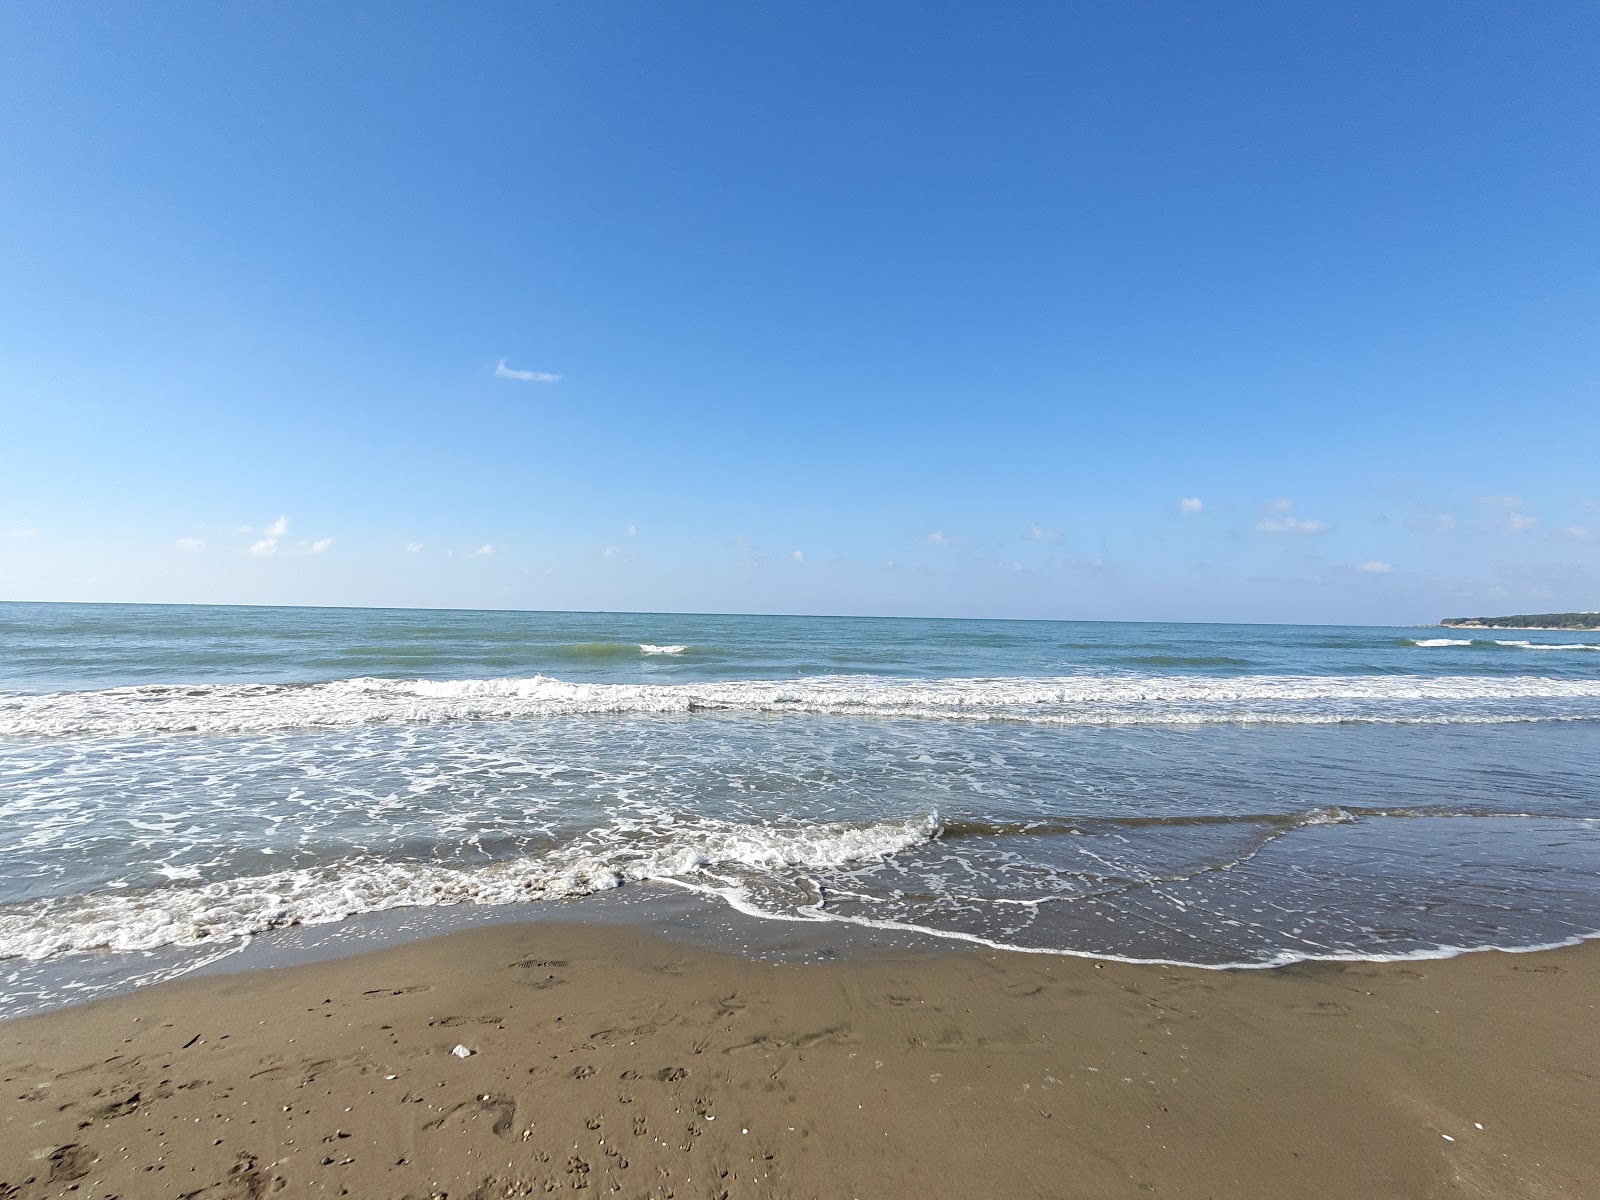 Zdjęcie Bahce beach z powierzchnią jasny piasek